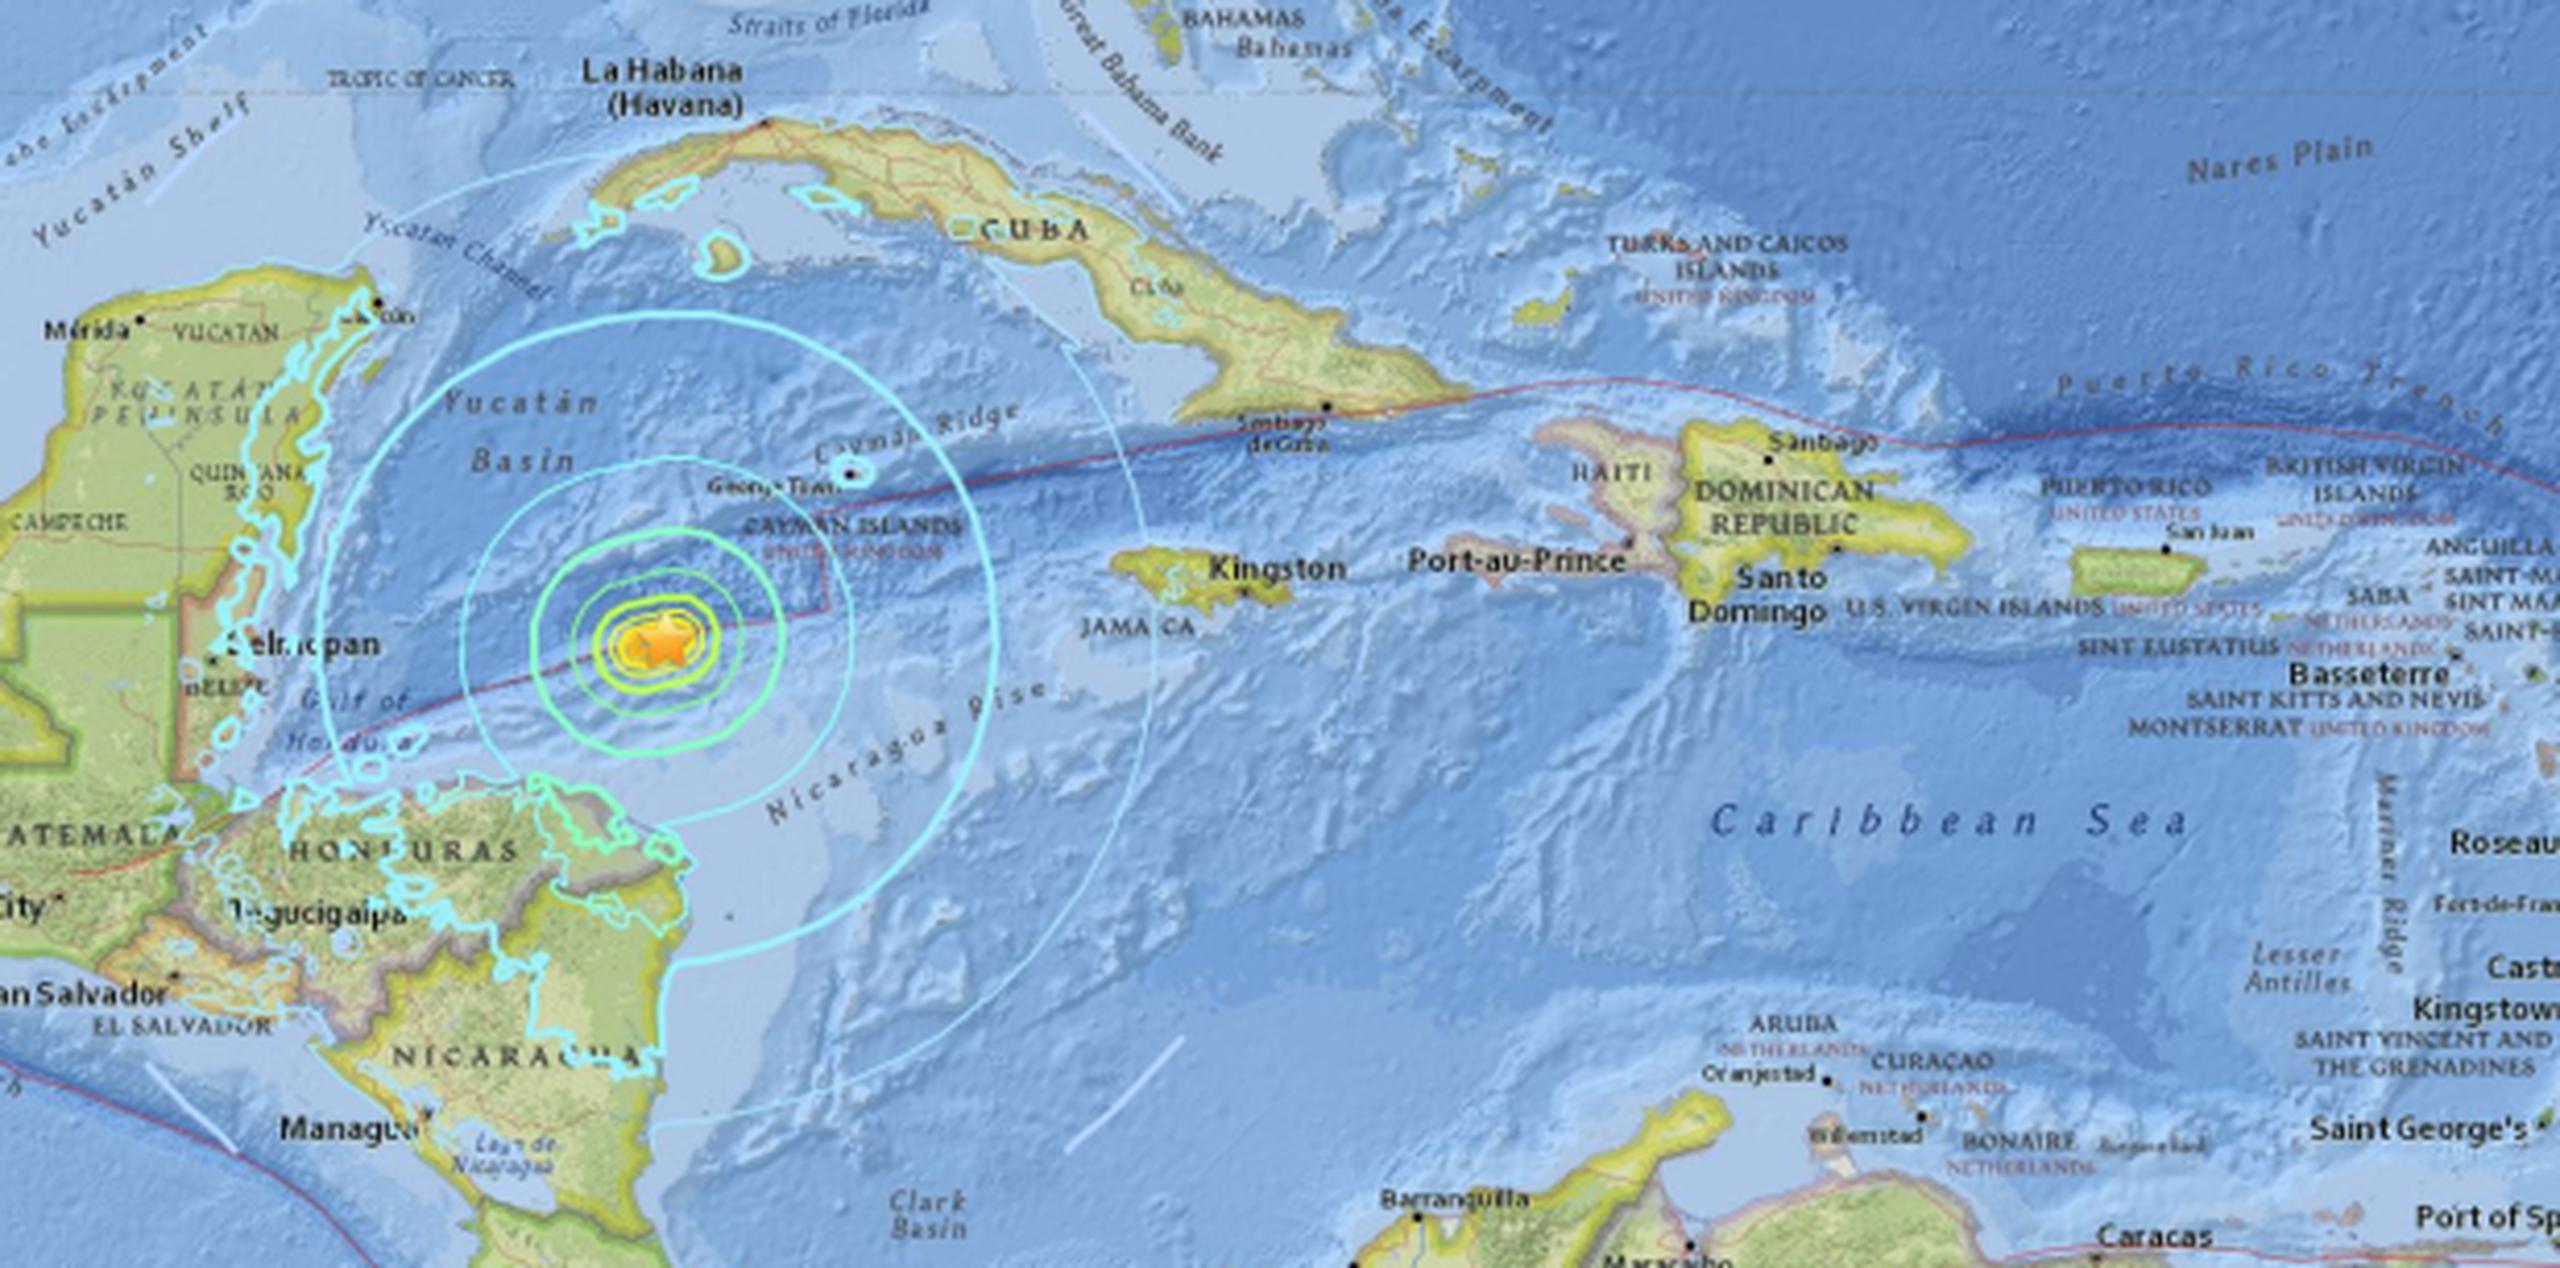 Por su magnitud y la poca profundidad del epicentro, se emitió una alerta por tsunami para Cuba, Honduras, México y Puerto Rico, aunque fue desactivada pocas horas después. (USGS)